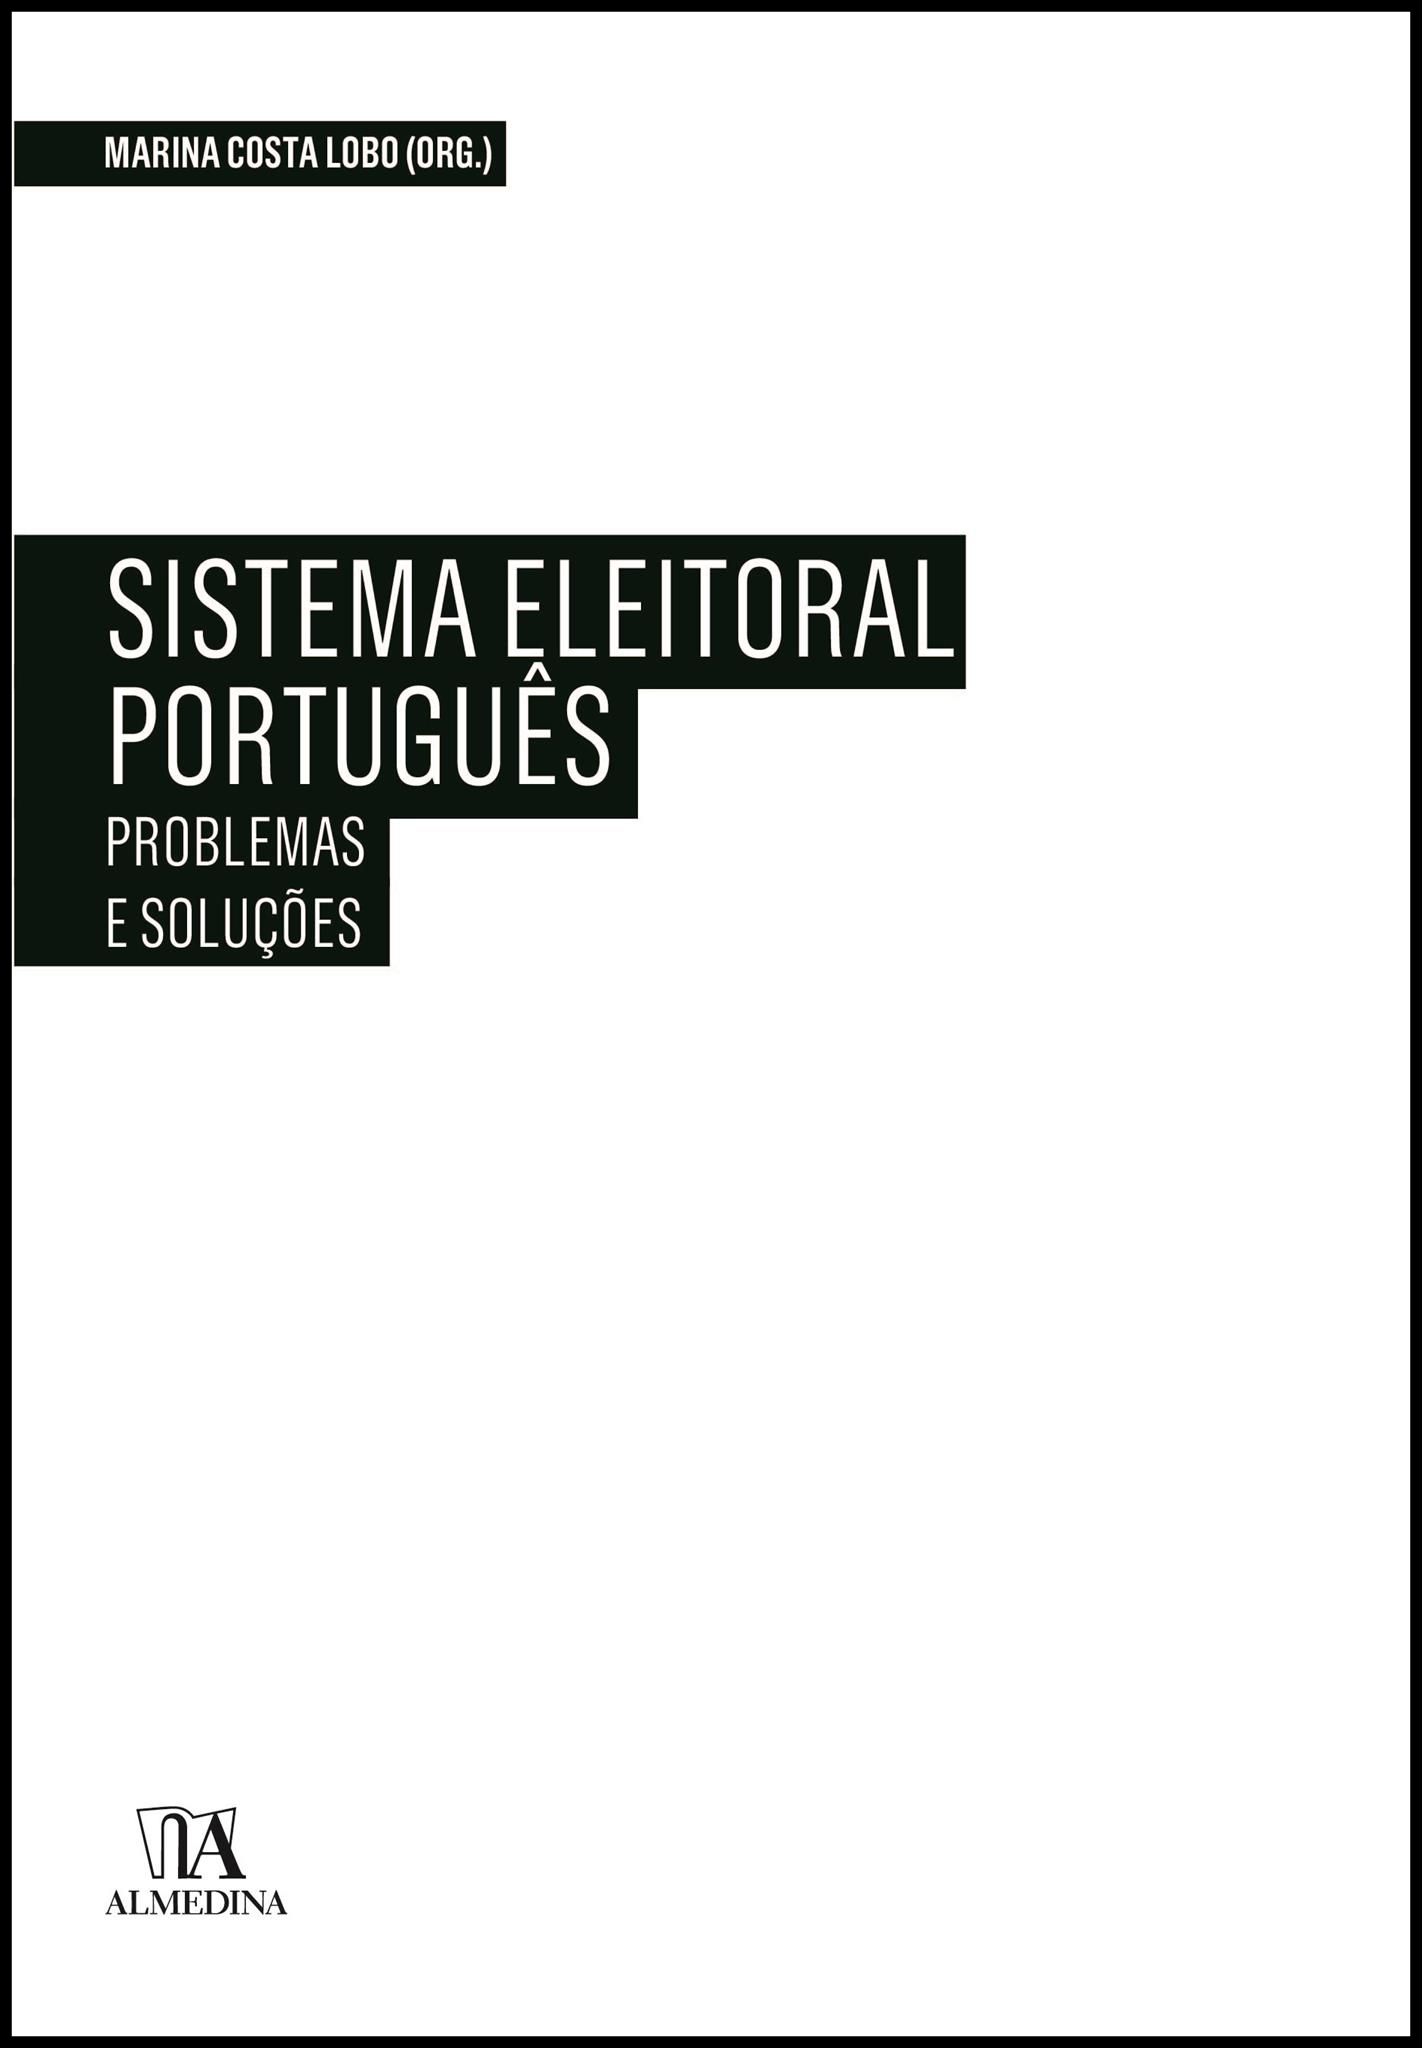 Sistema Eleitoral Português: Problemas e Soluções